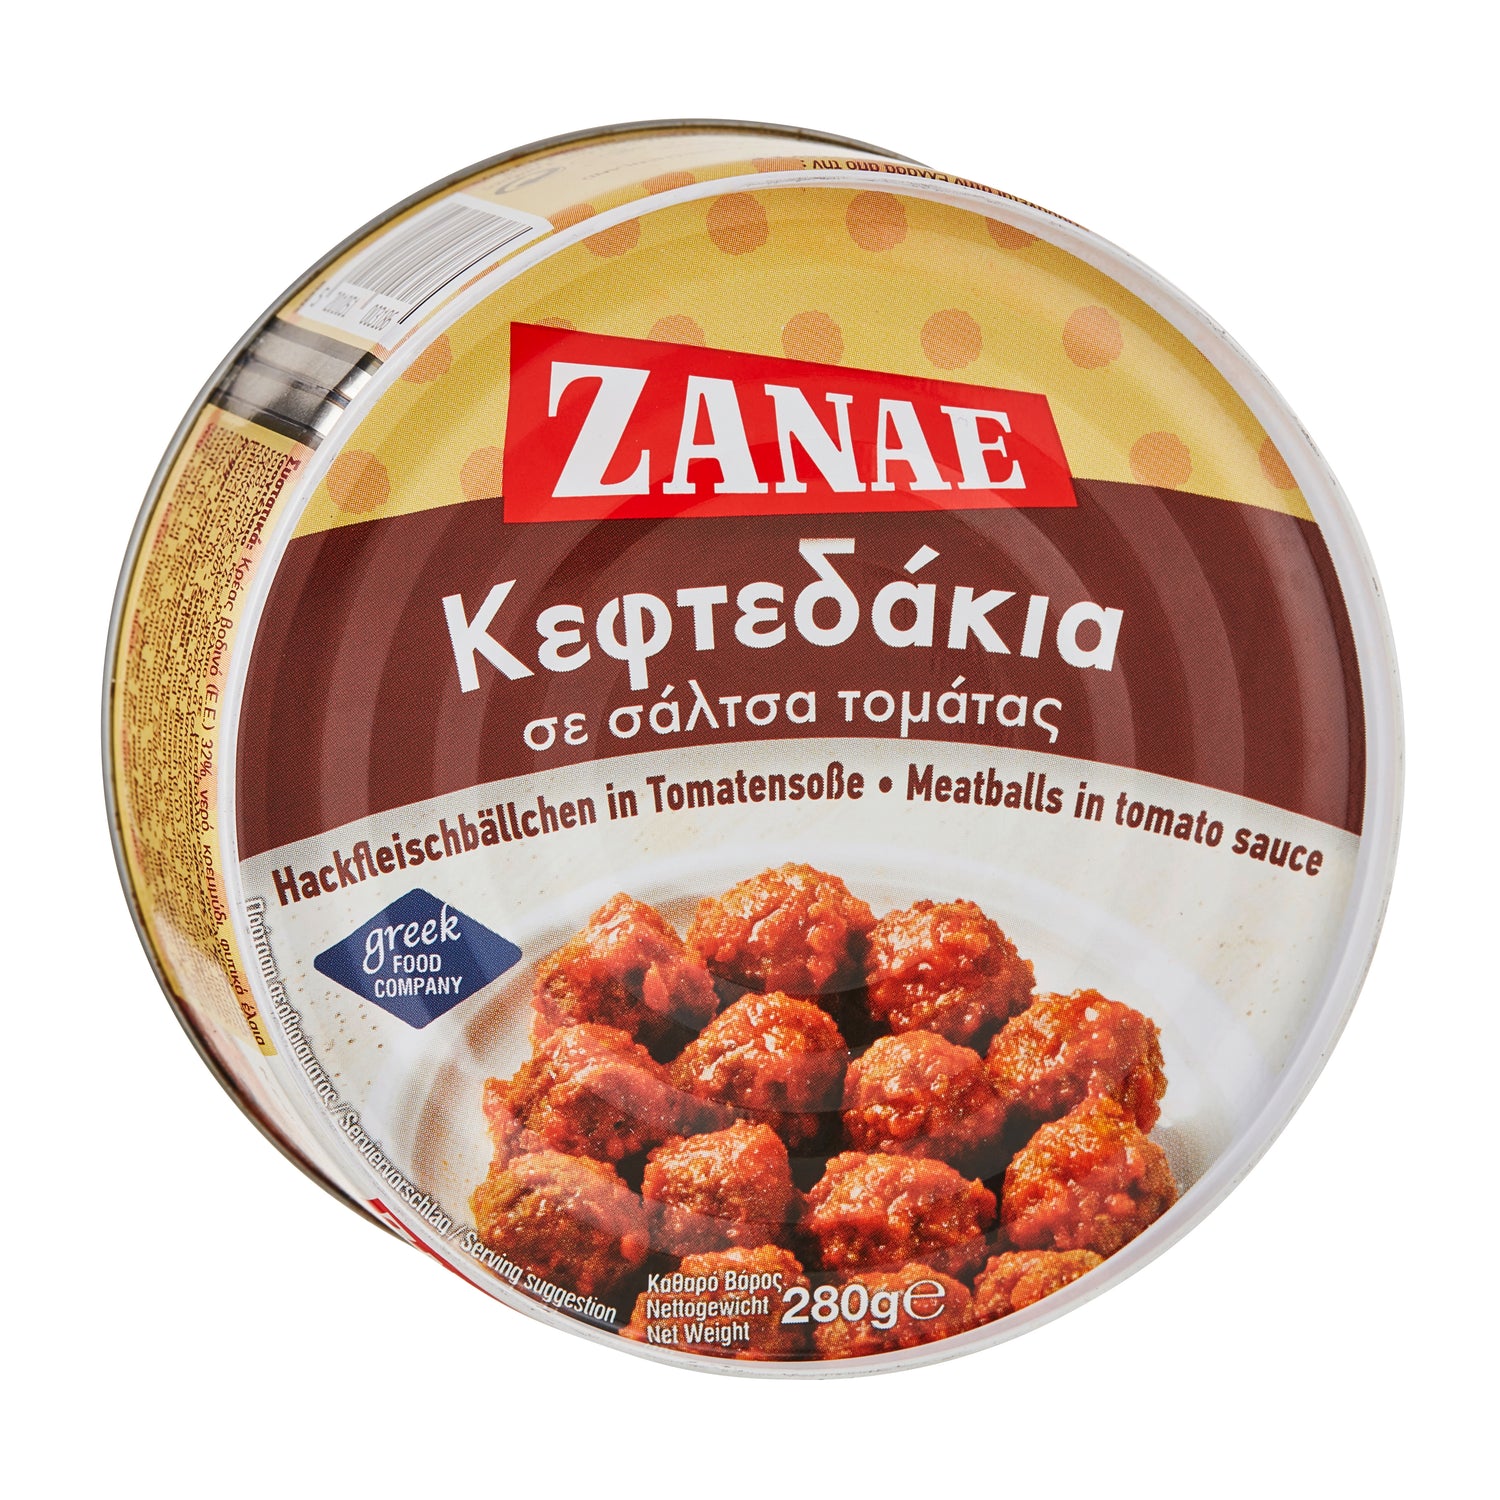 Hackfleischbälchen Keftedakia Zanae 280 g